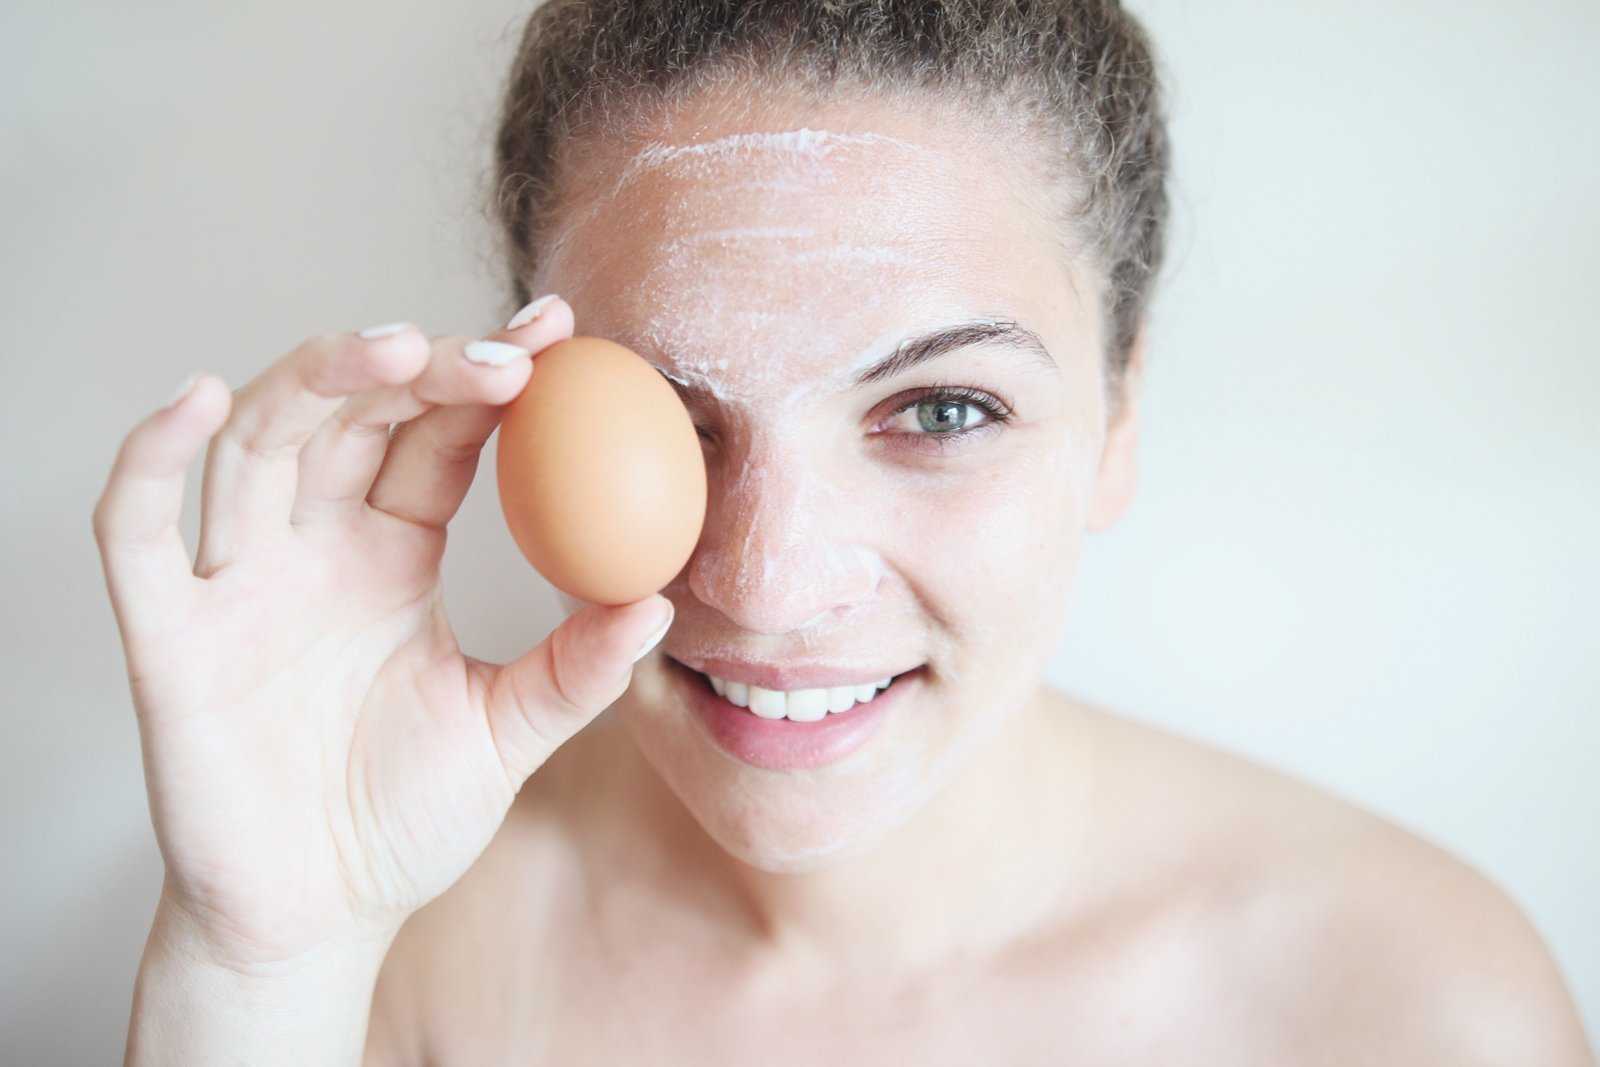 Яичный белок для лица, в чём его польза в косметологии. рецепты эффективных масок для лица из яичных белков - автор екатерина данилова - журнал женское мнение